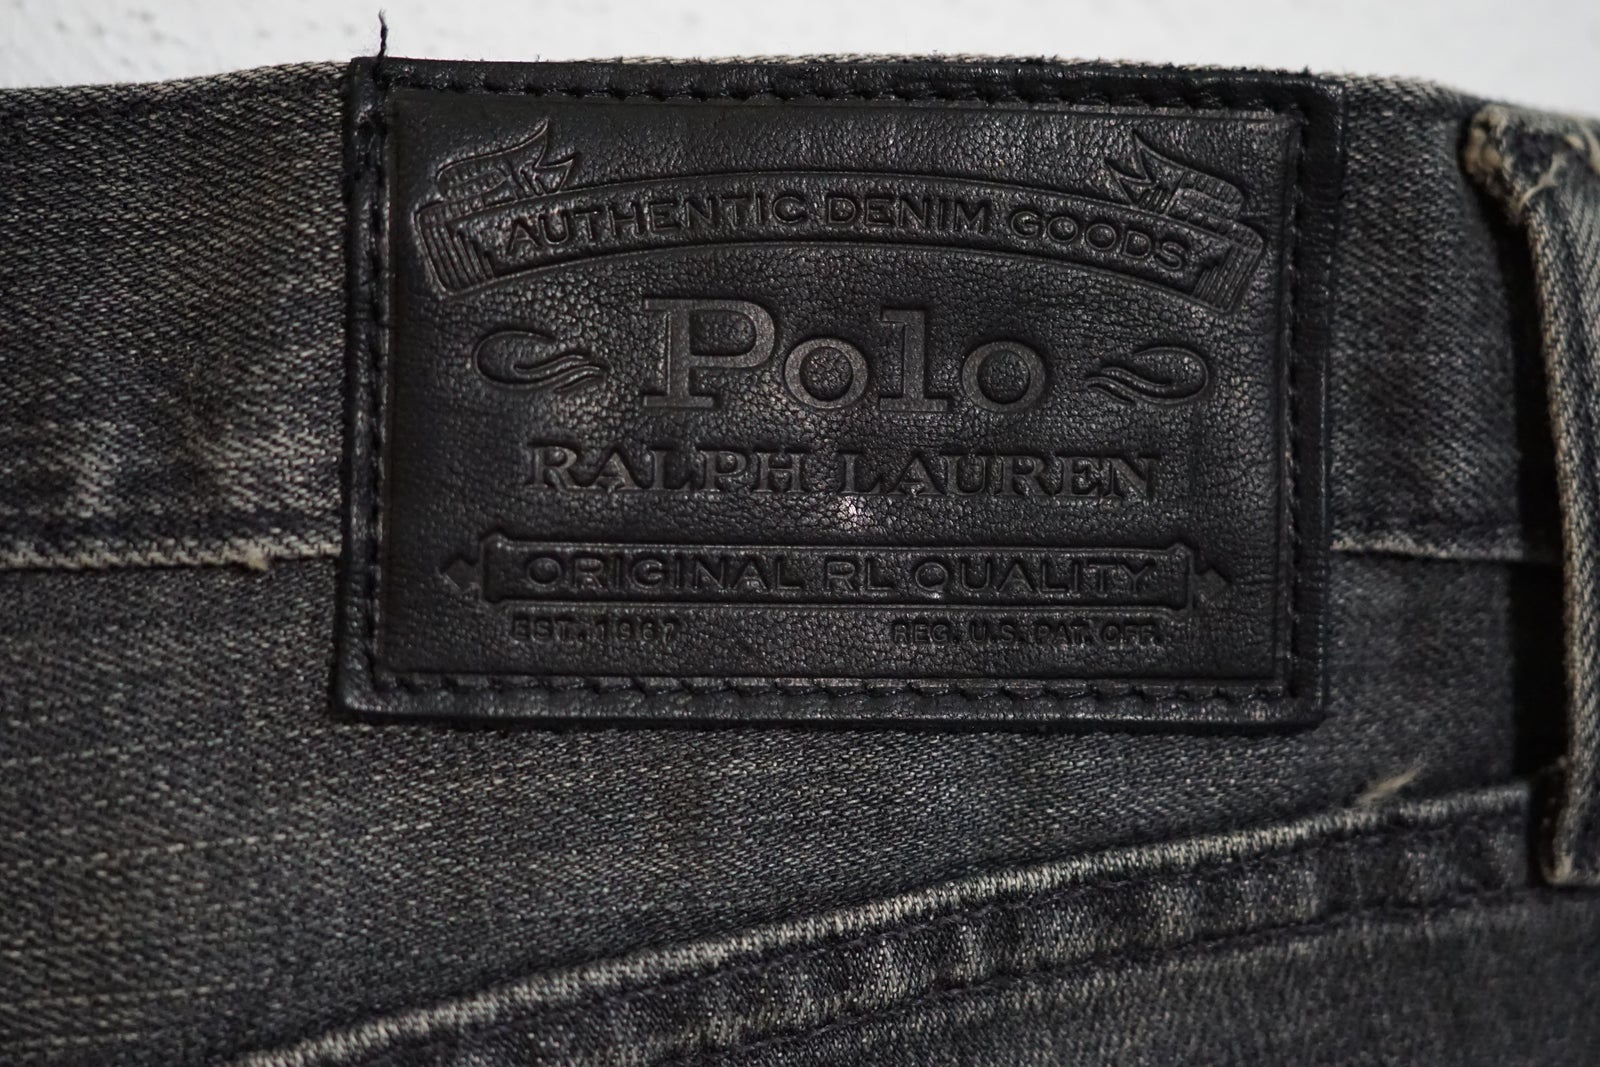 Jeans, Polo Ralph Lauren jeans - 34/30, str. 34